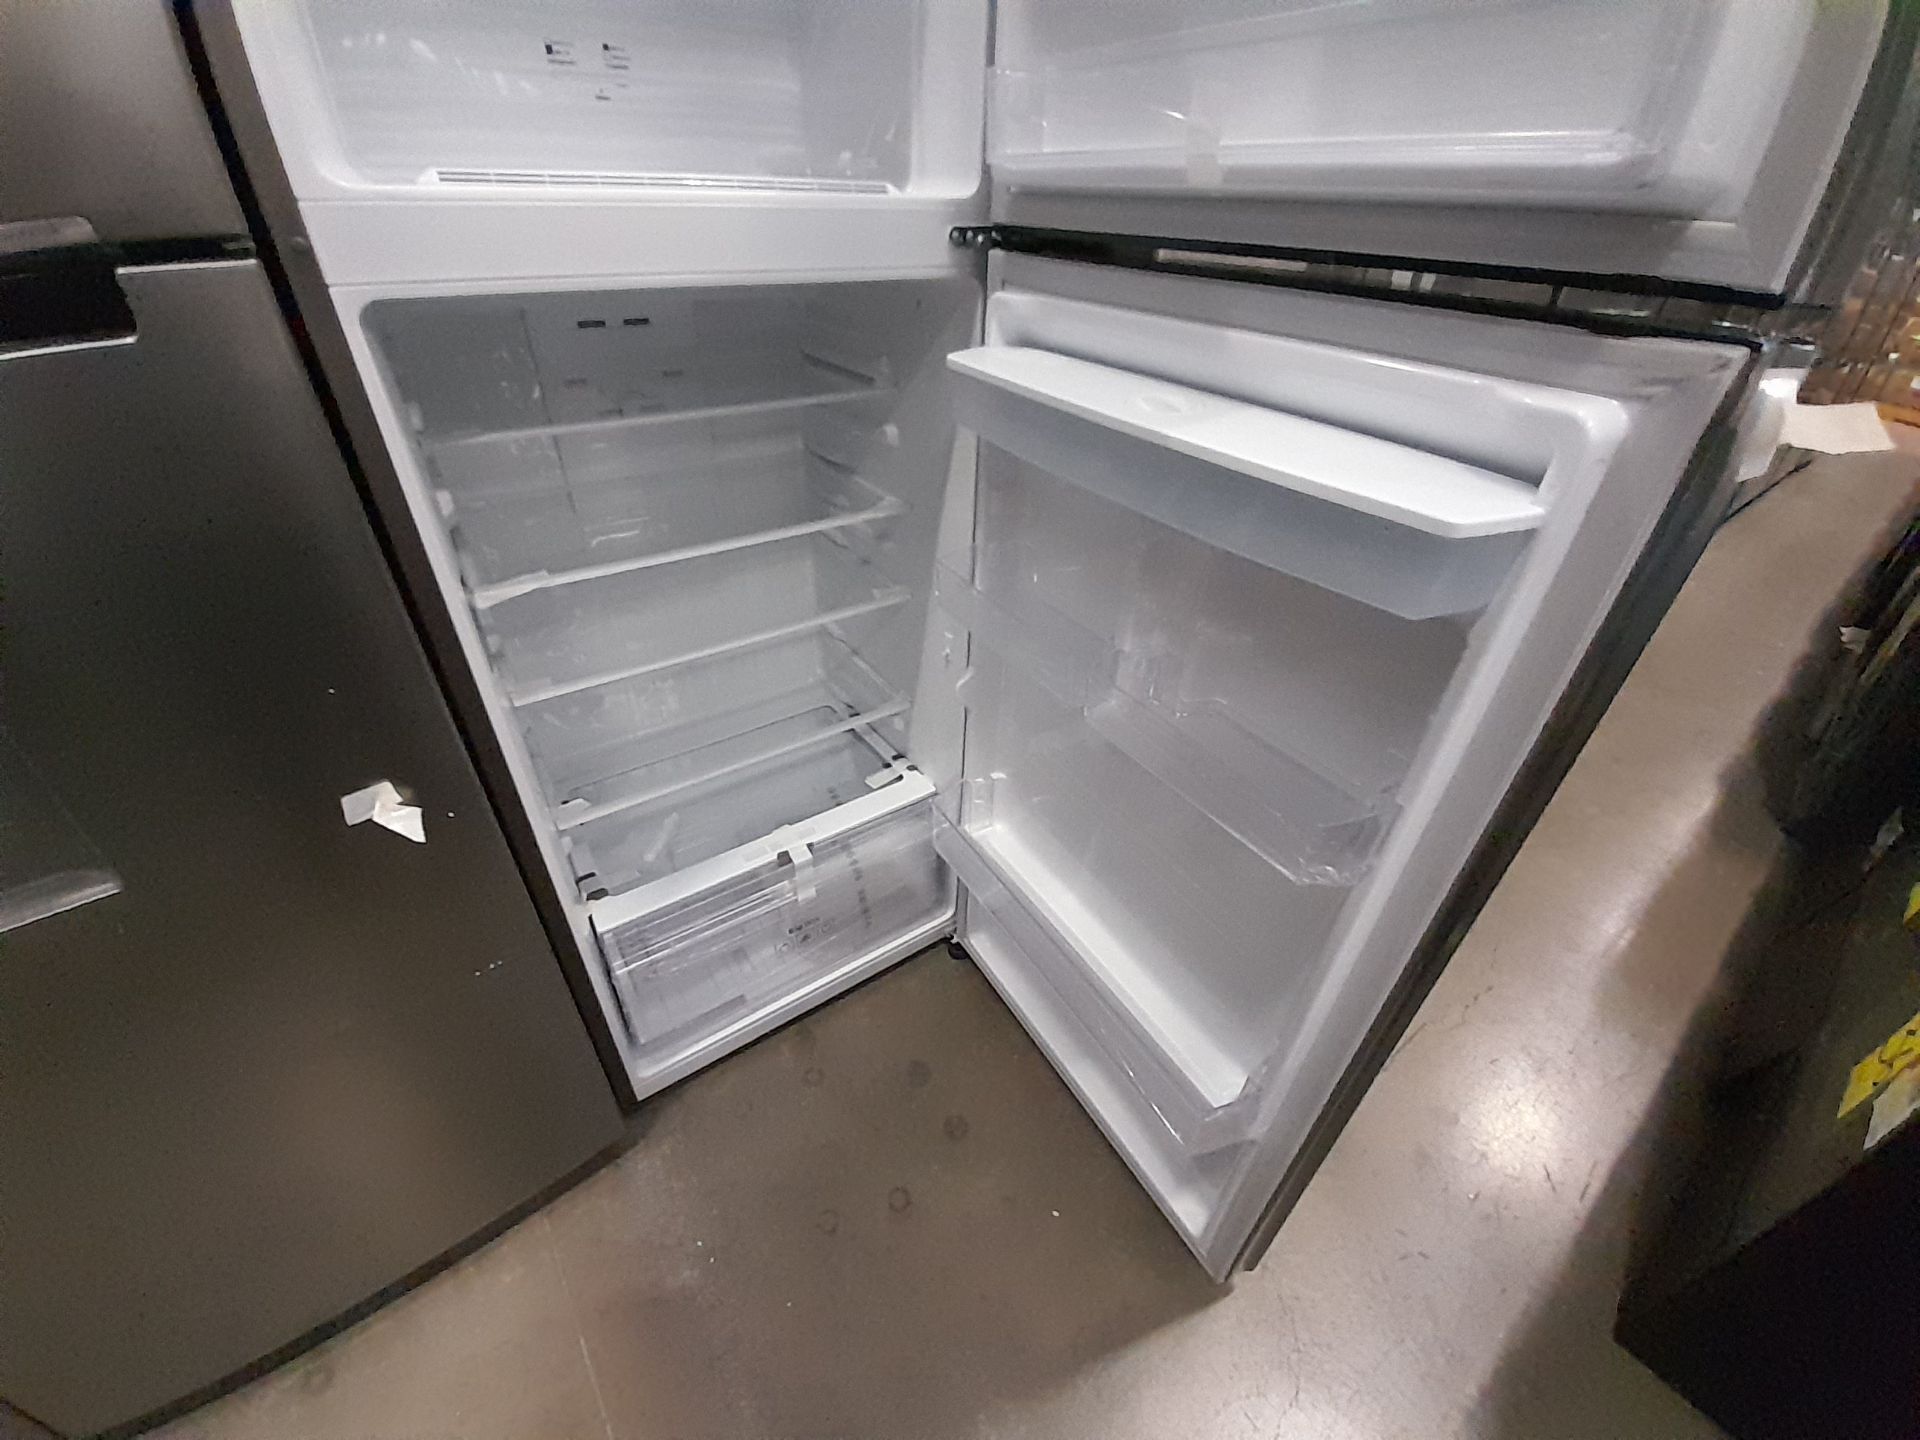 Lote de 2 refrigeradores contiene: 1 refrigerador Marca SAMSUNG, Modelo RT38A57IJS9, Serie 01144F, - Image 5 of 8